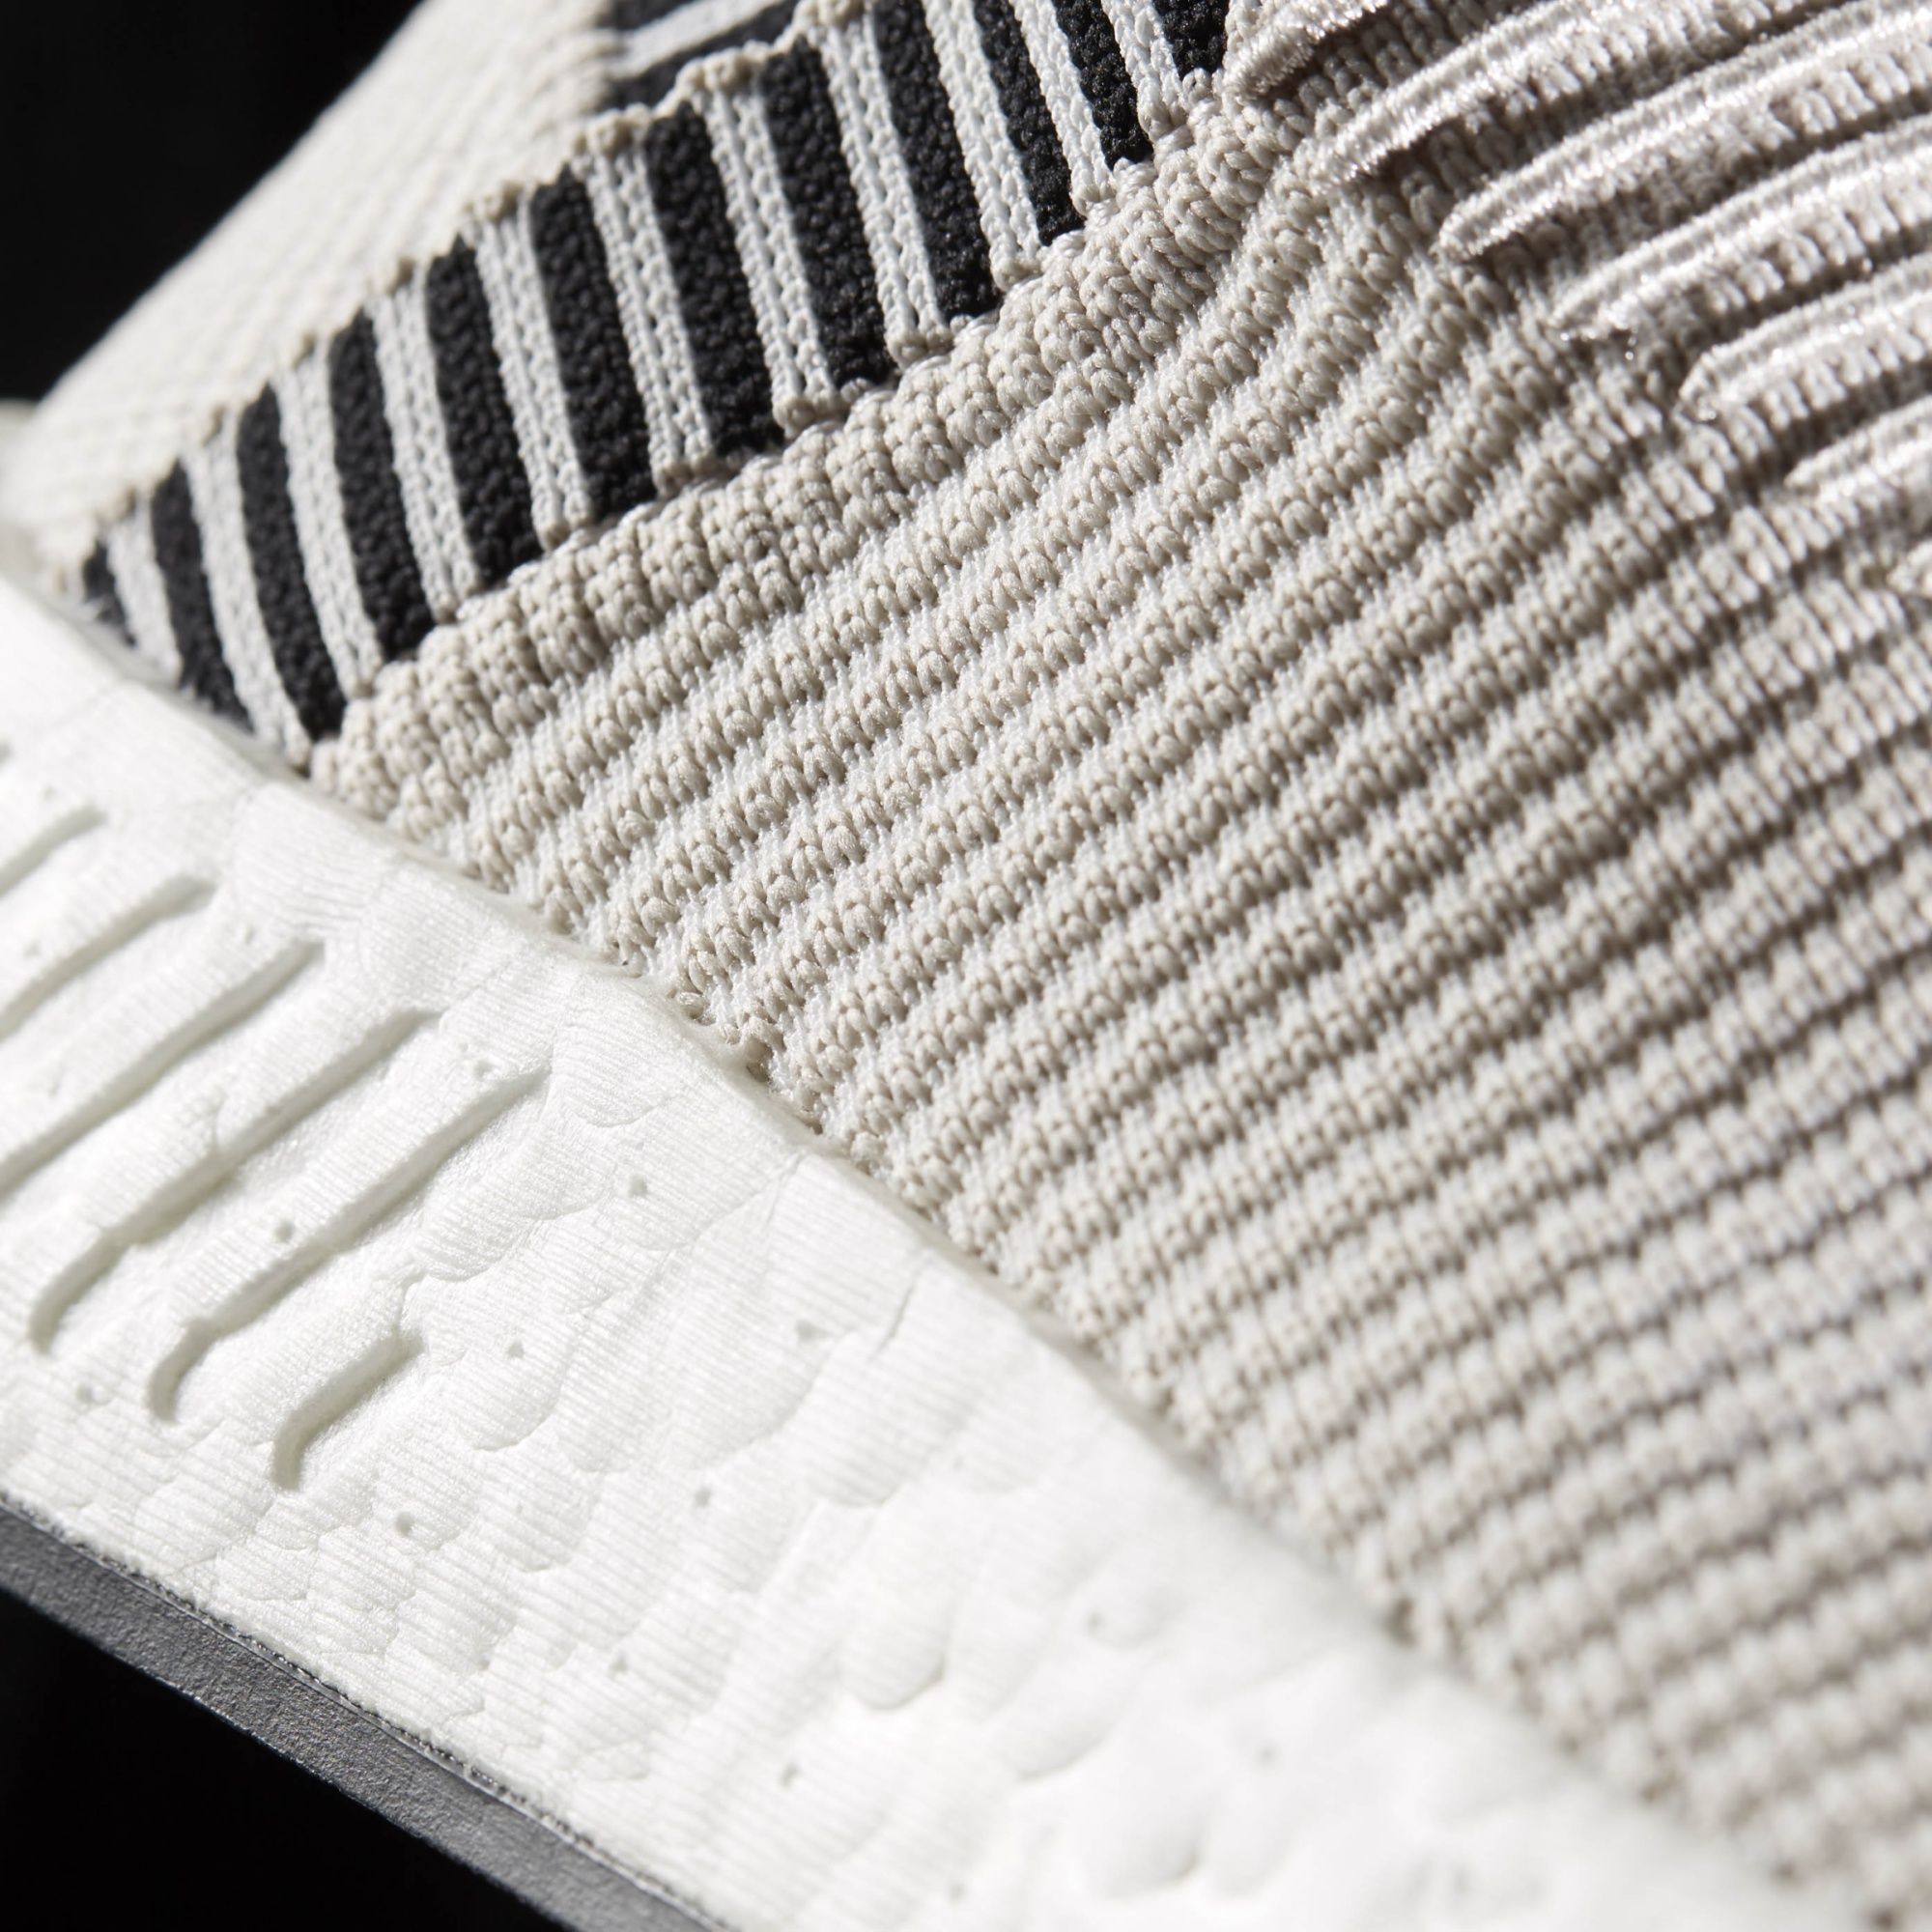 Adidas W NMD_CS2 Primeknit
Pearl Grey / Footwear White